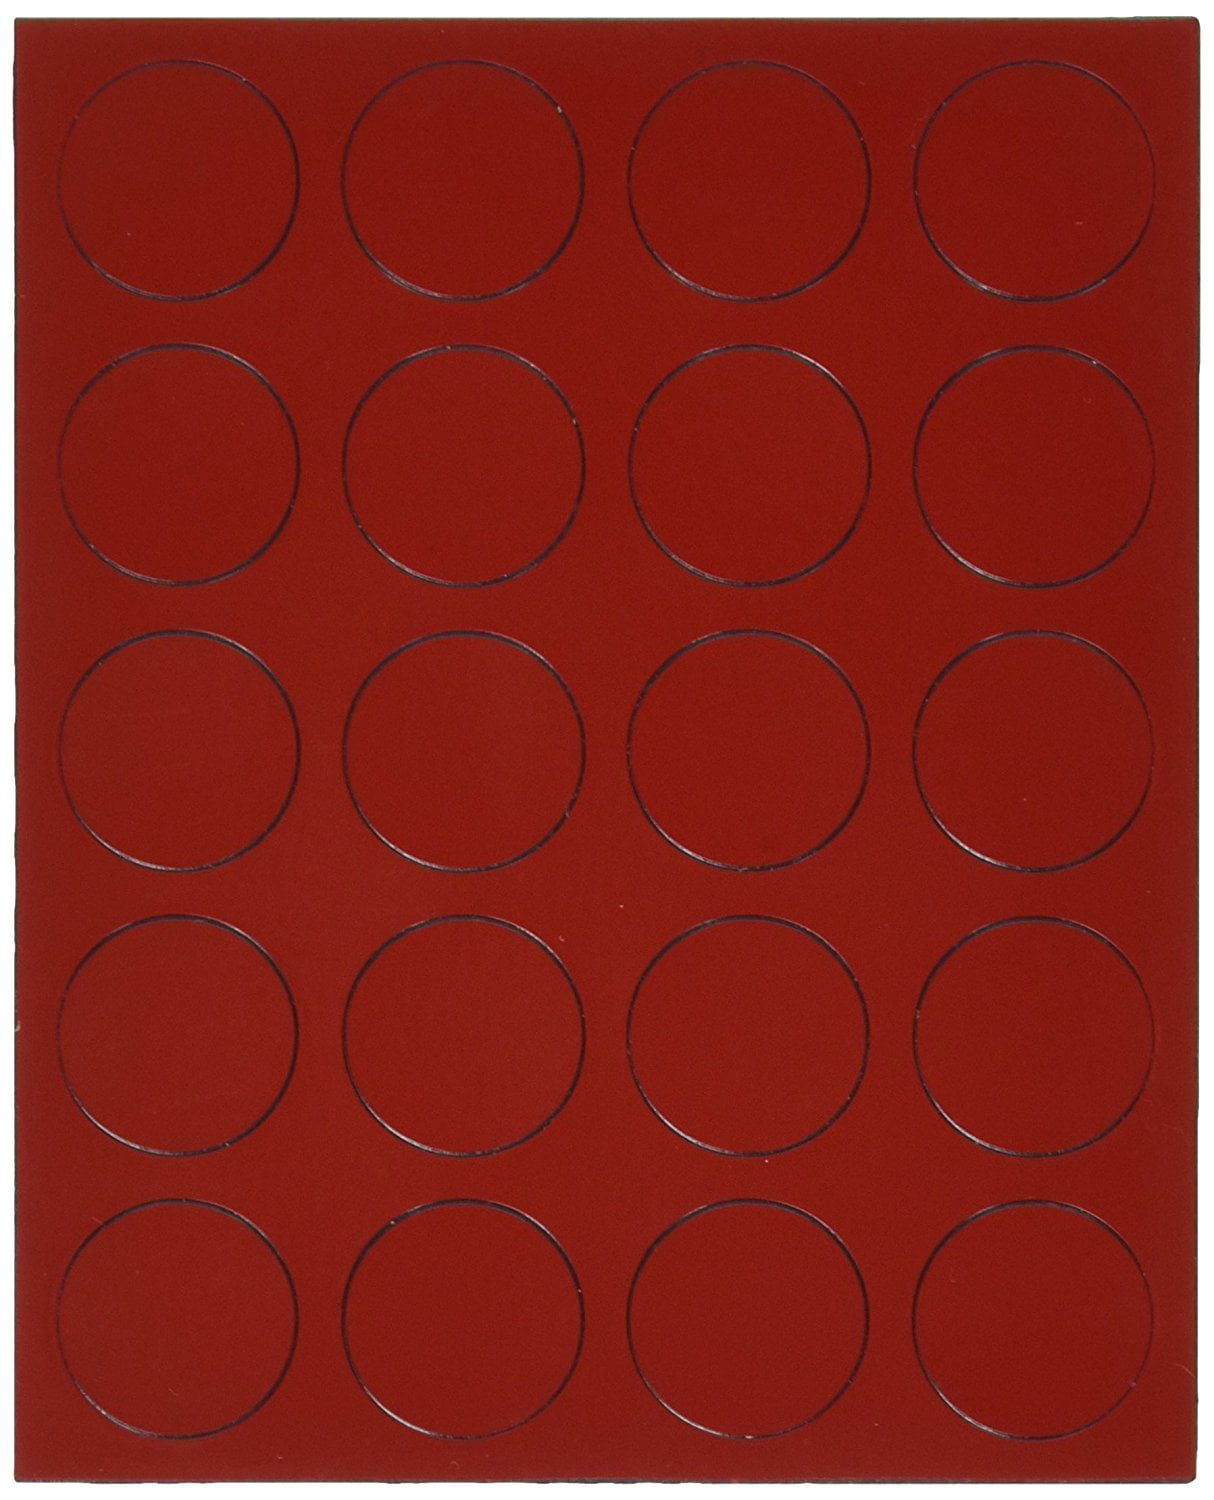 Red MCR Quartet Magnetic Circles 20 per Set 0.75-Inch Diameter 